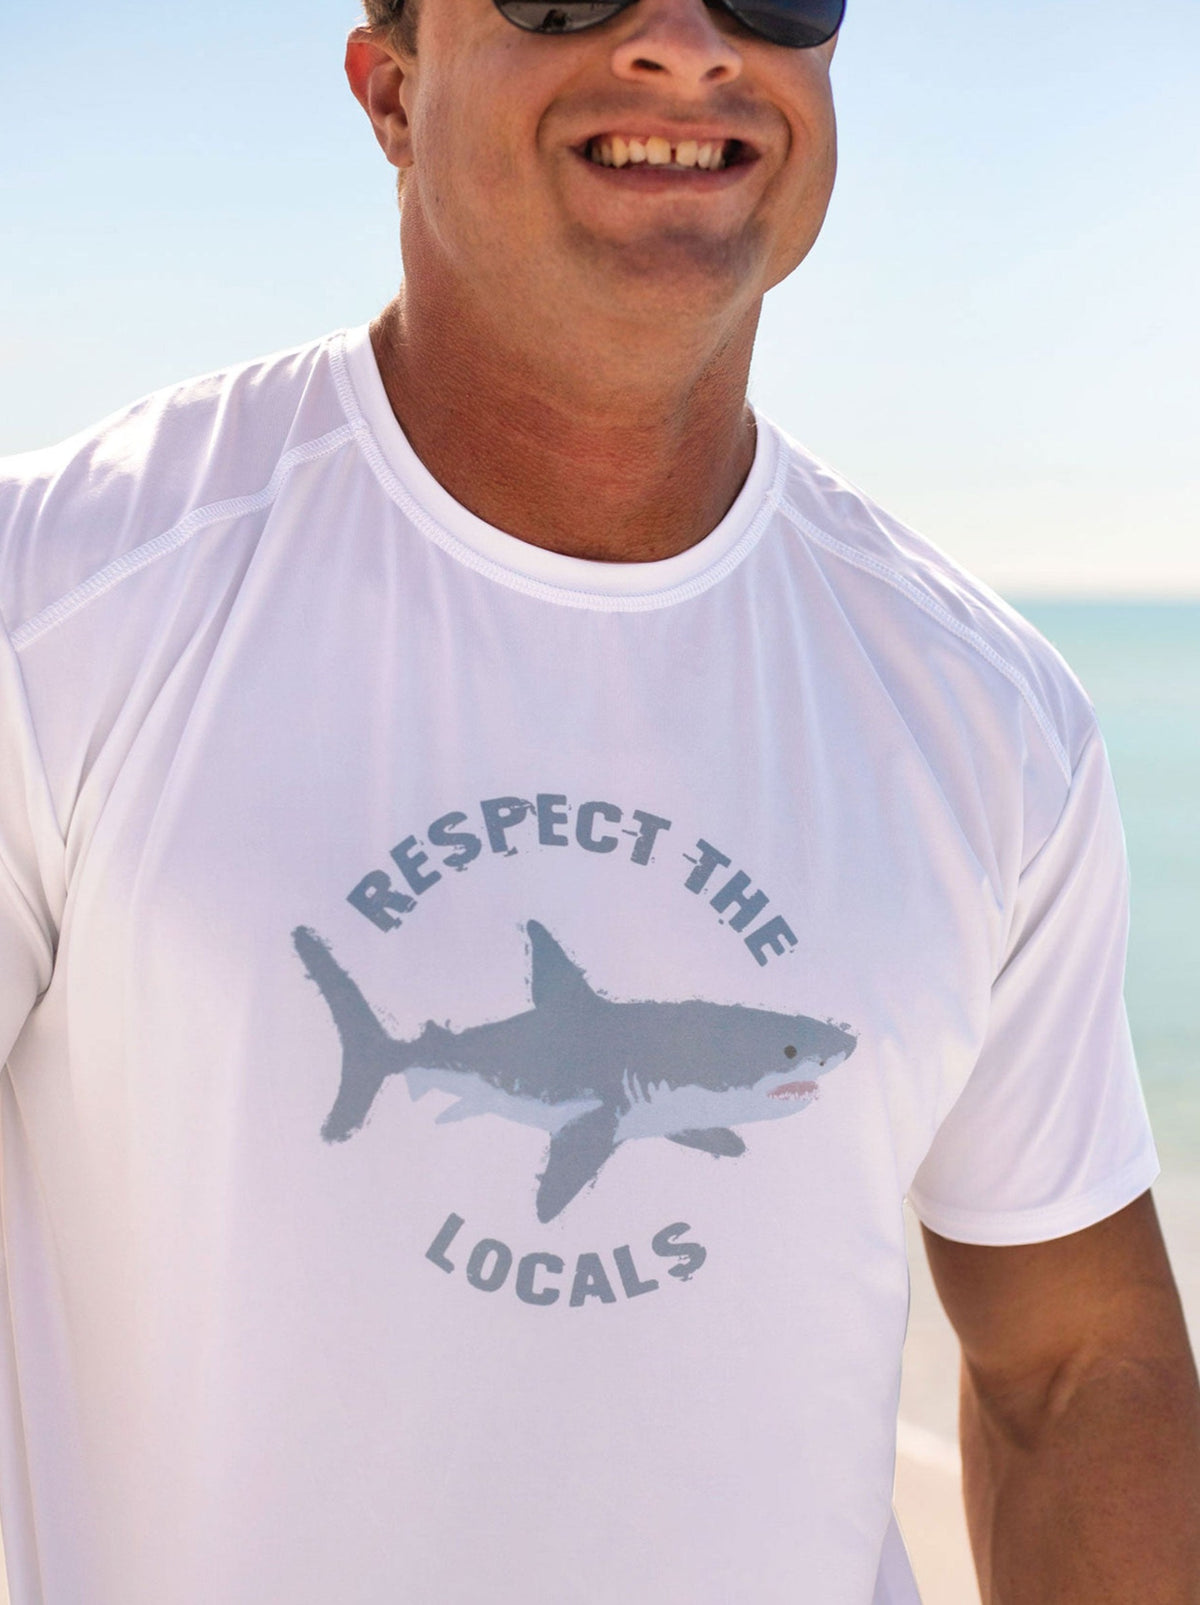 Respect the Locals Sun T-Shirt